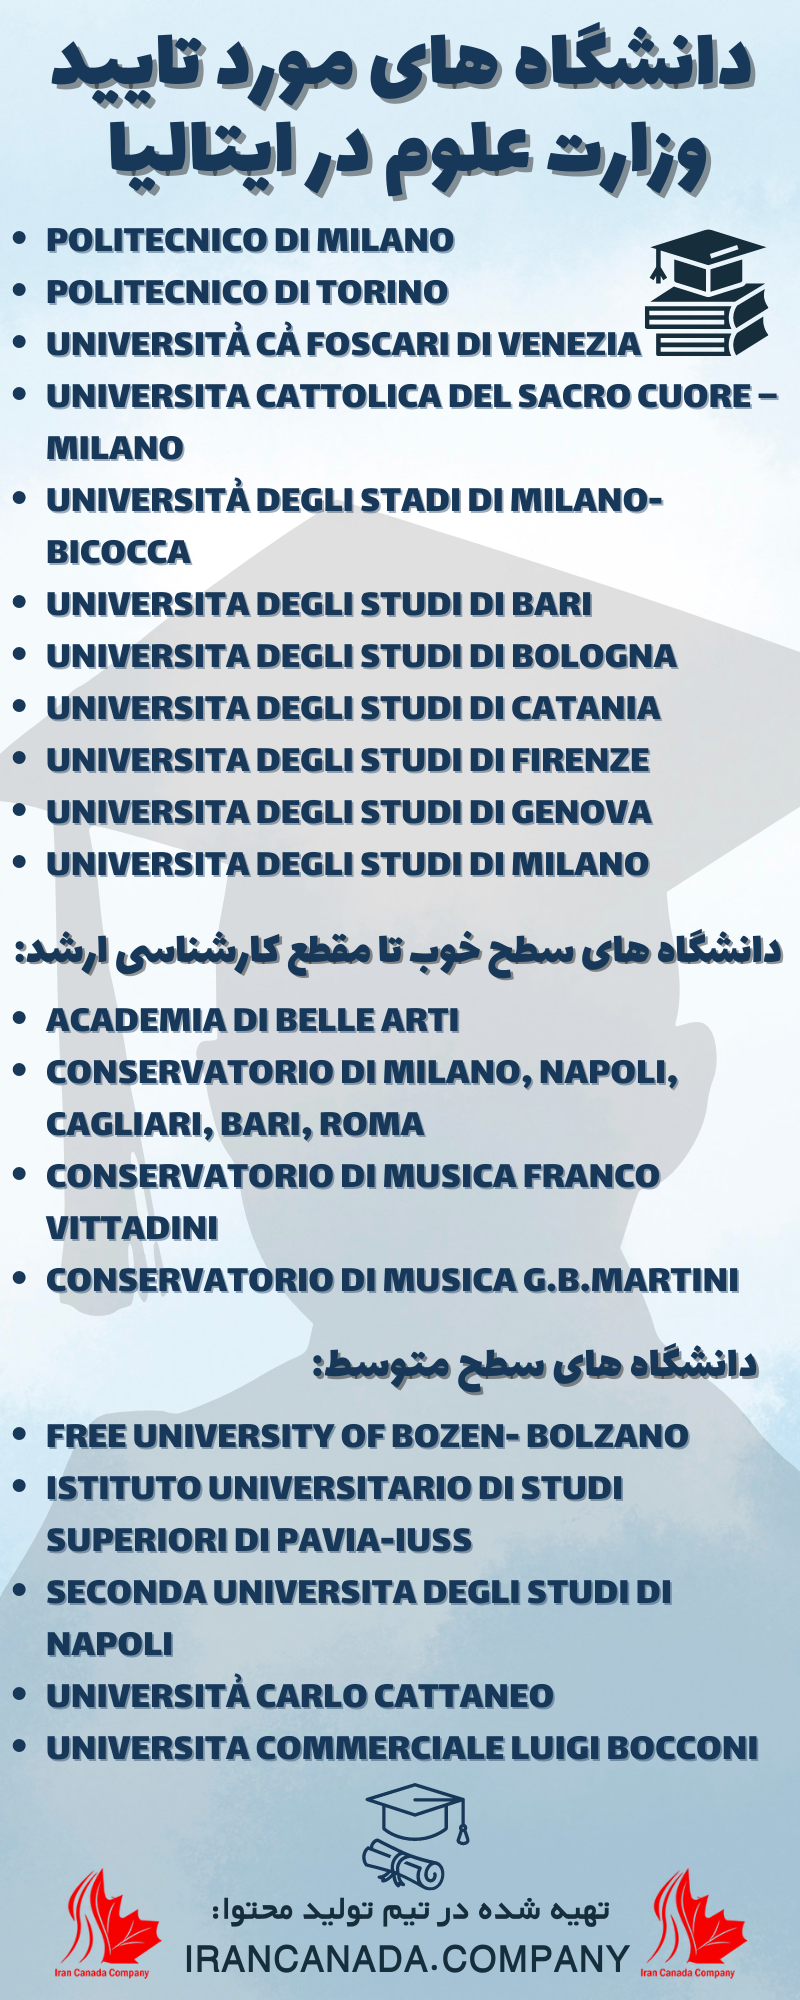 دانشگاه های مورد تایید وزارت علوم در ایتالیا